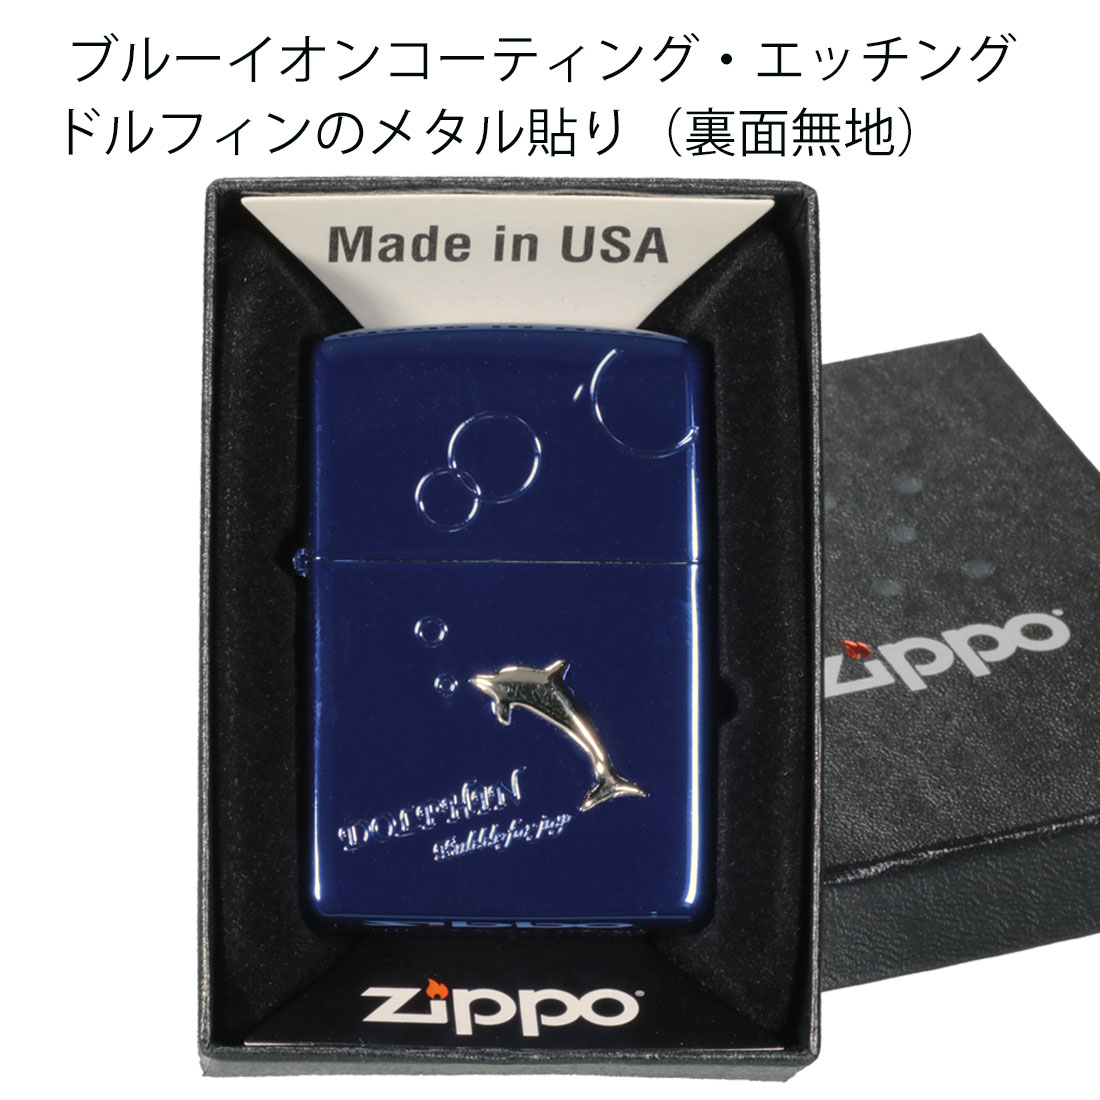 ZIPPO(ジッポーライター) ドルフィン メタル貼り バブル ブルーイオンコーティング エッチング　2BLM-BDOLPHIN かわいい ギフト  送料無料（ネコポス対応）